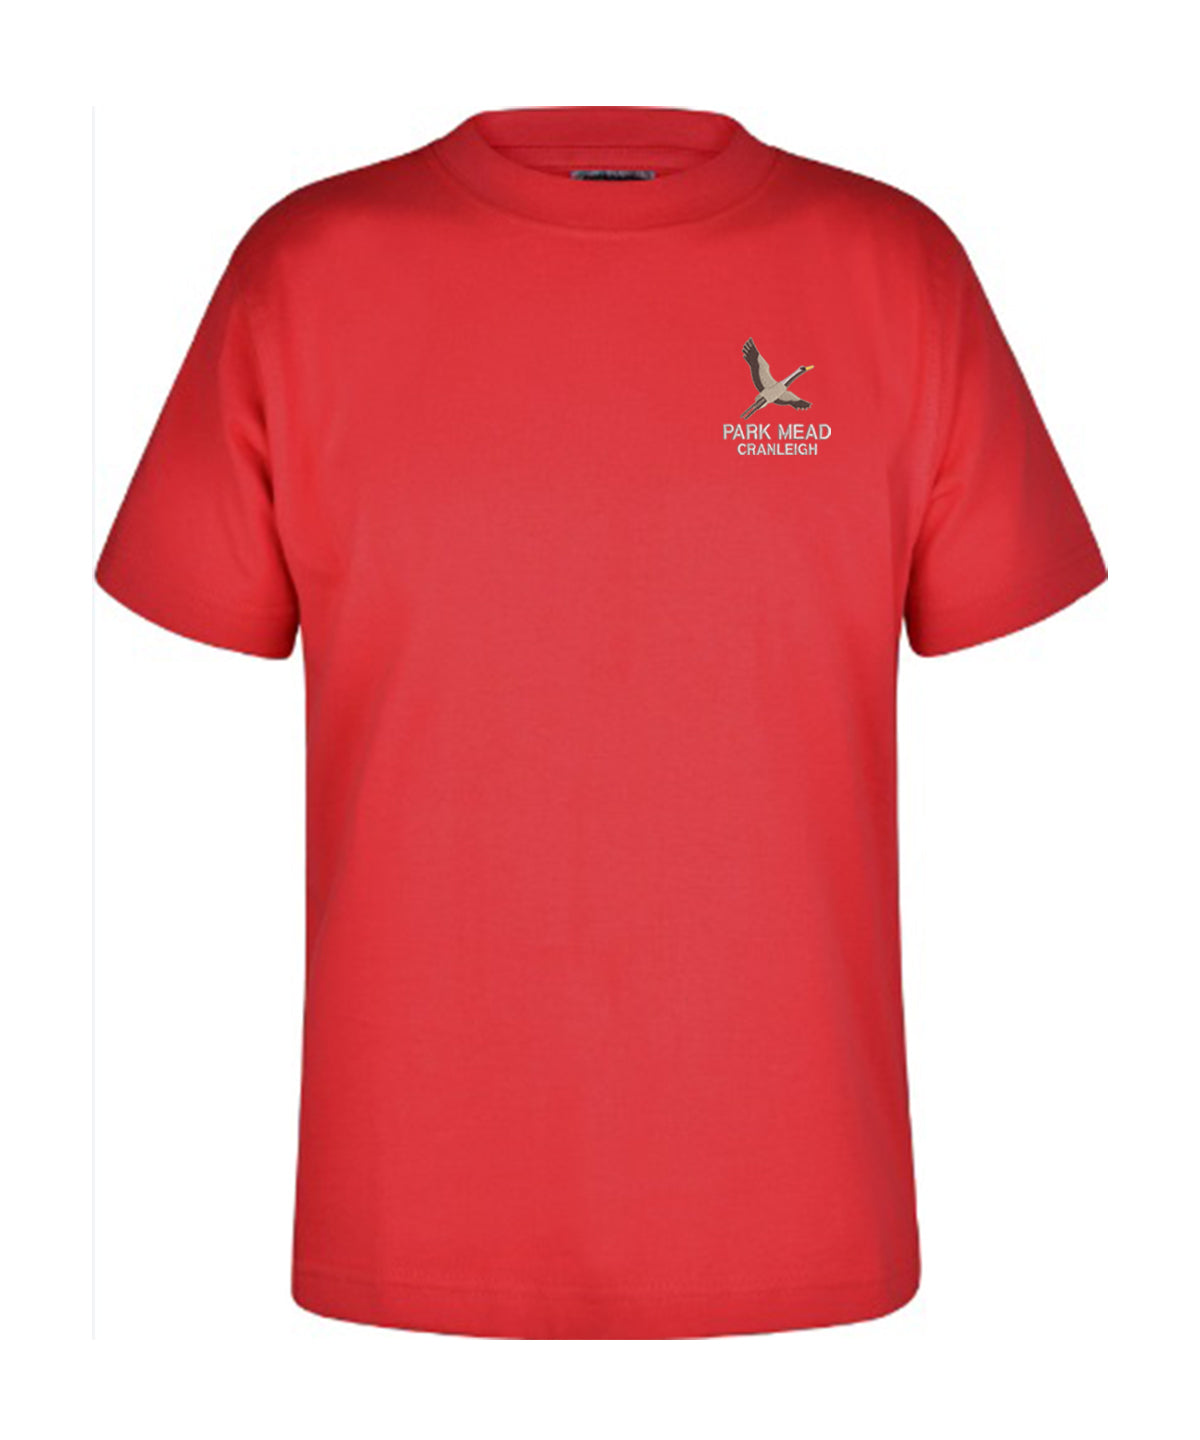 Park Mead Primary School - Unisex Cotton T Shirt - Red - School Uniform Shop